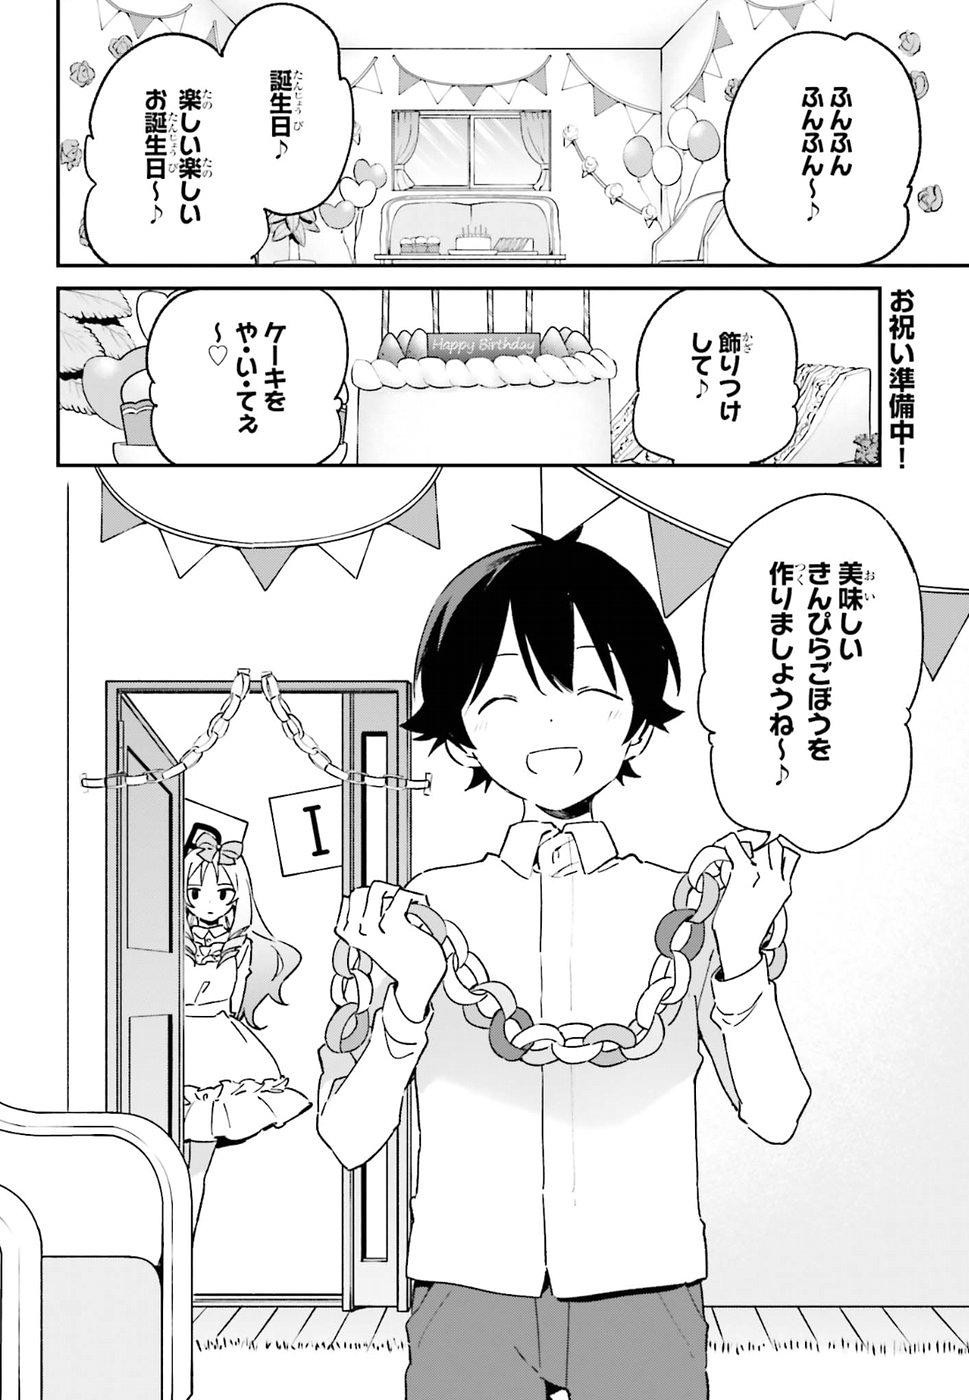 Ero Manga Sensei - Chapter 50 - Page 2